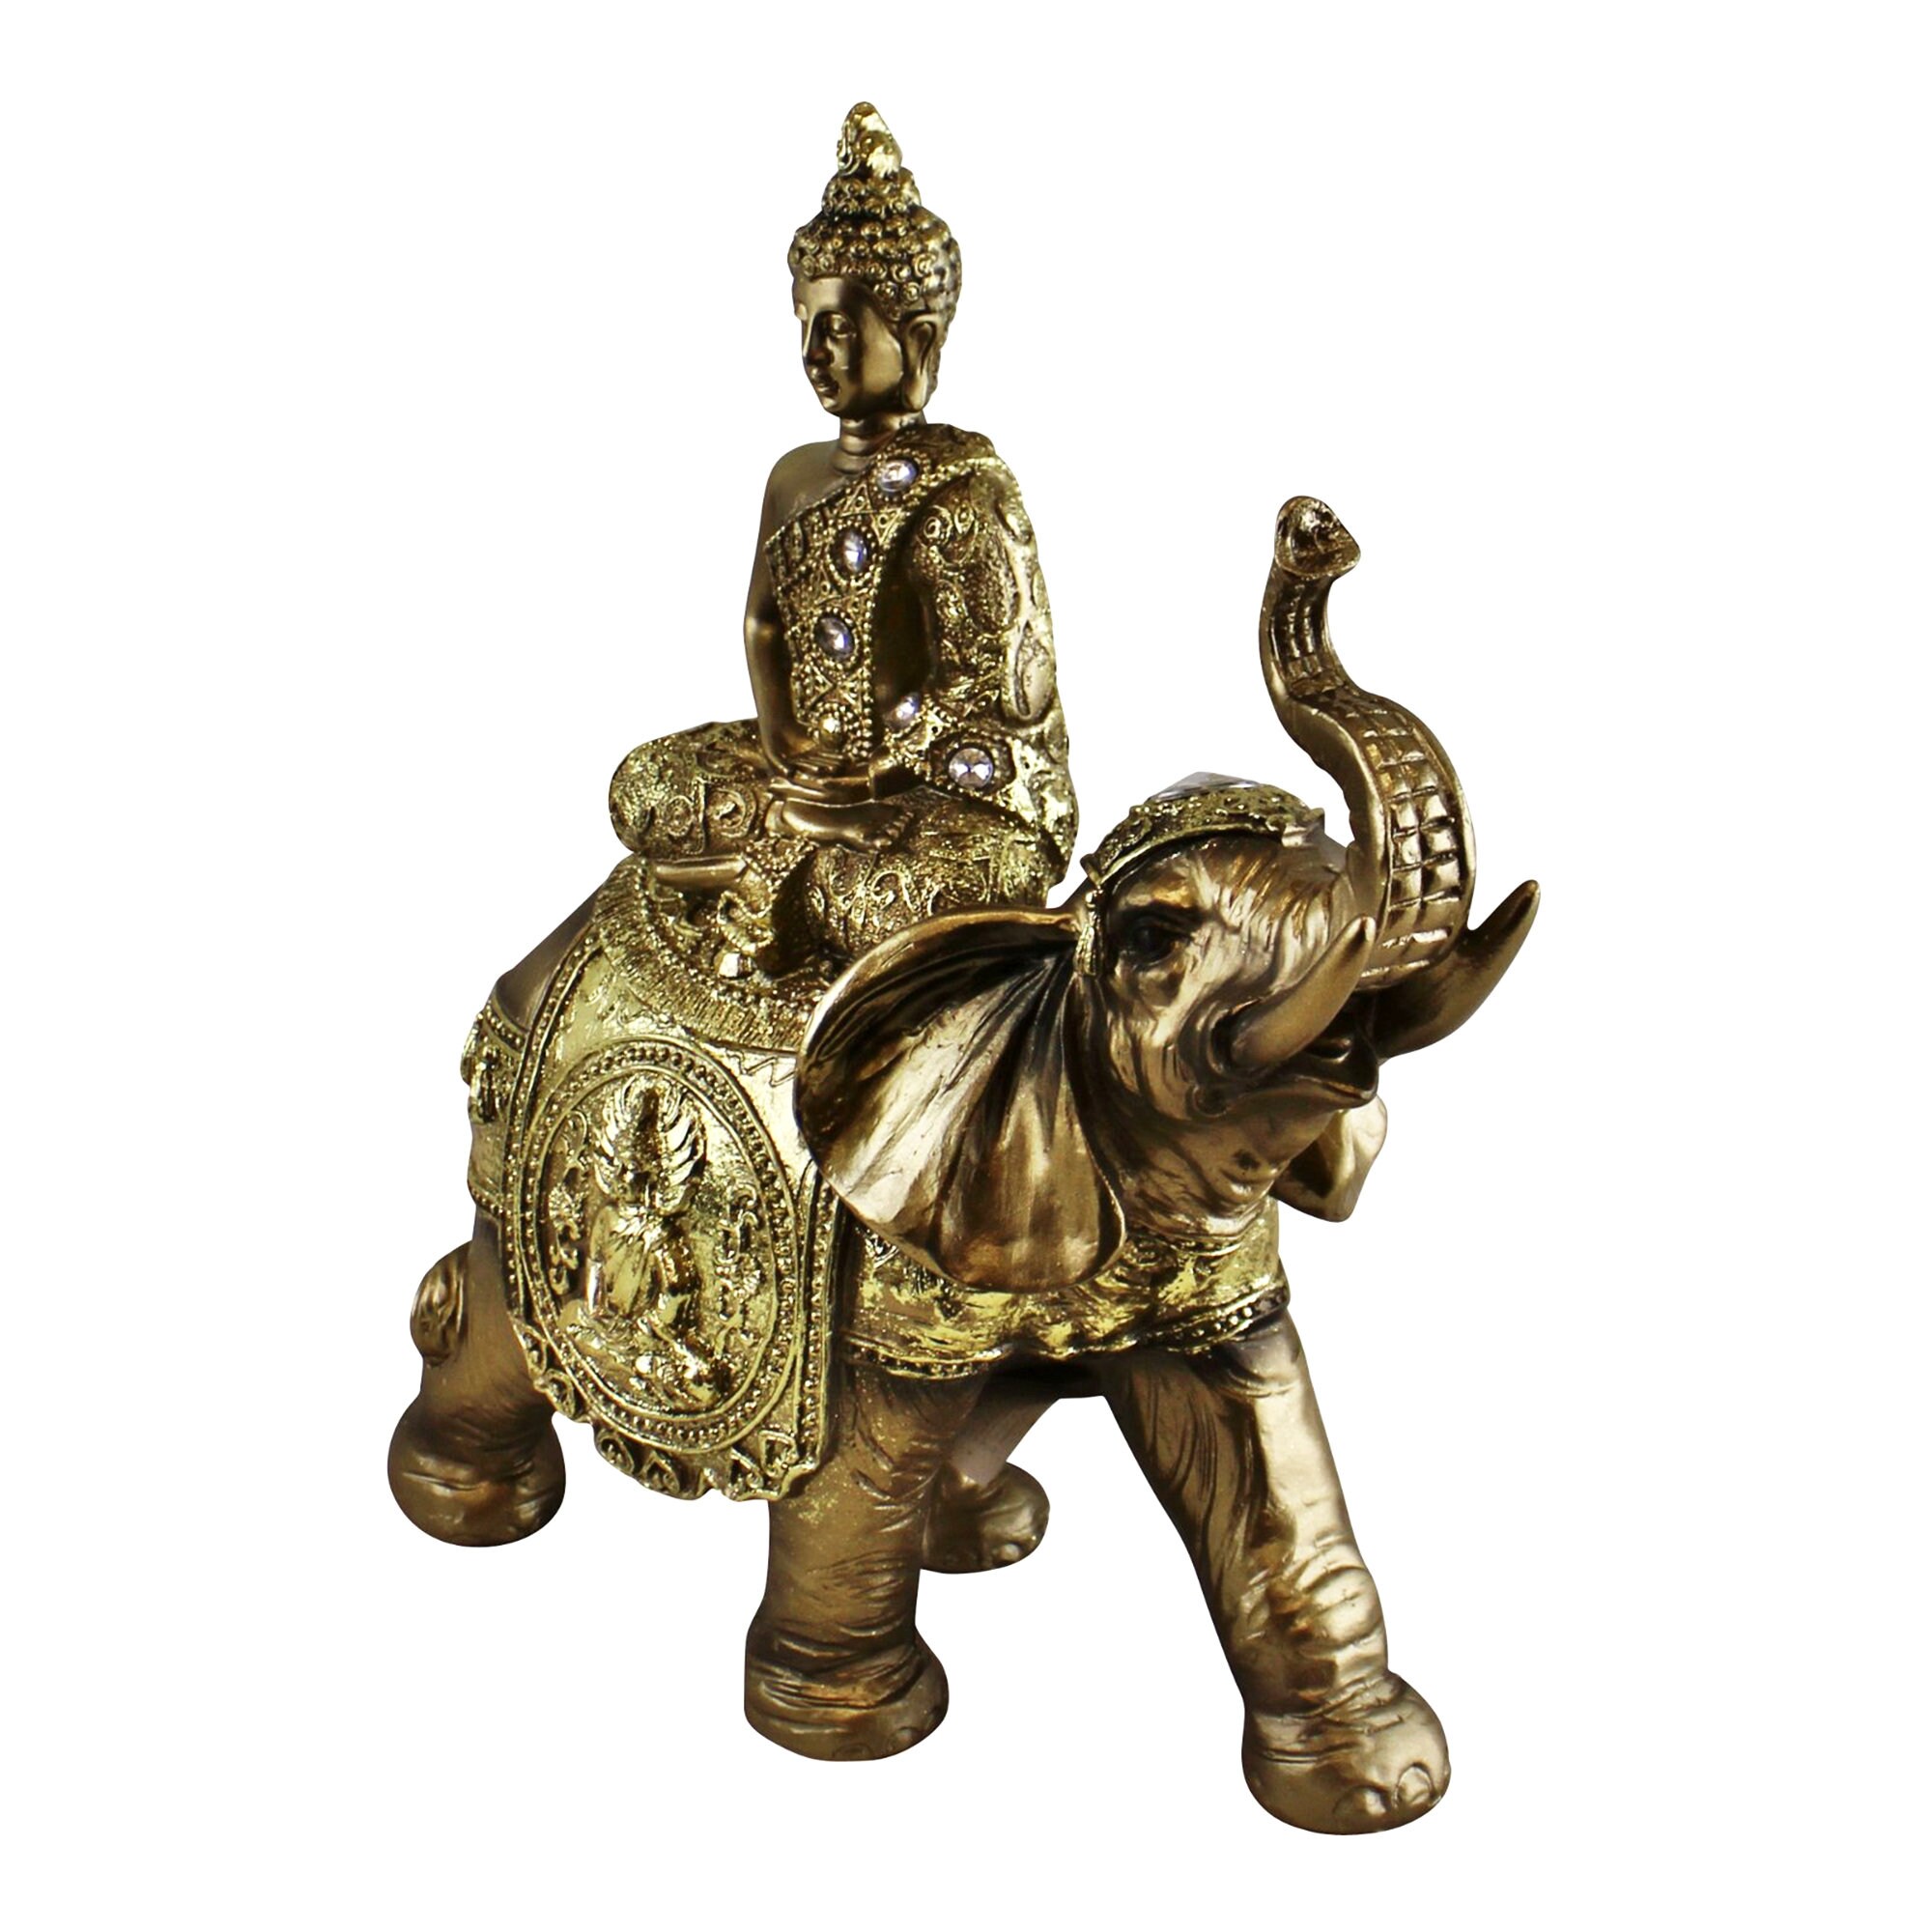 Golden Buddha & Elephant Ornament Jewelled Buddha on | Etsy